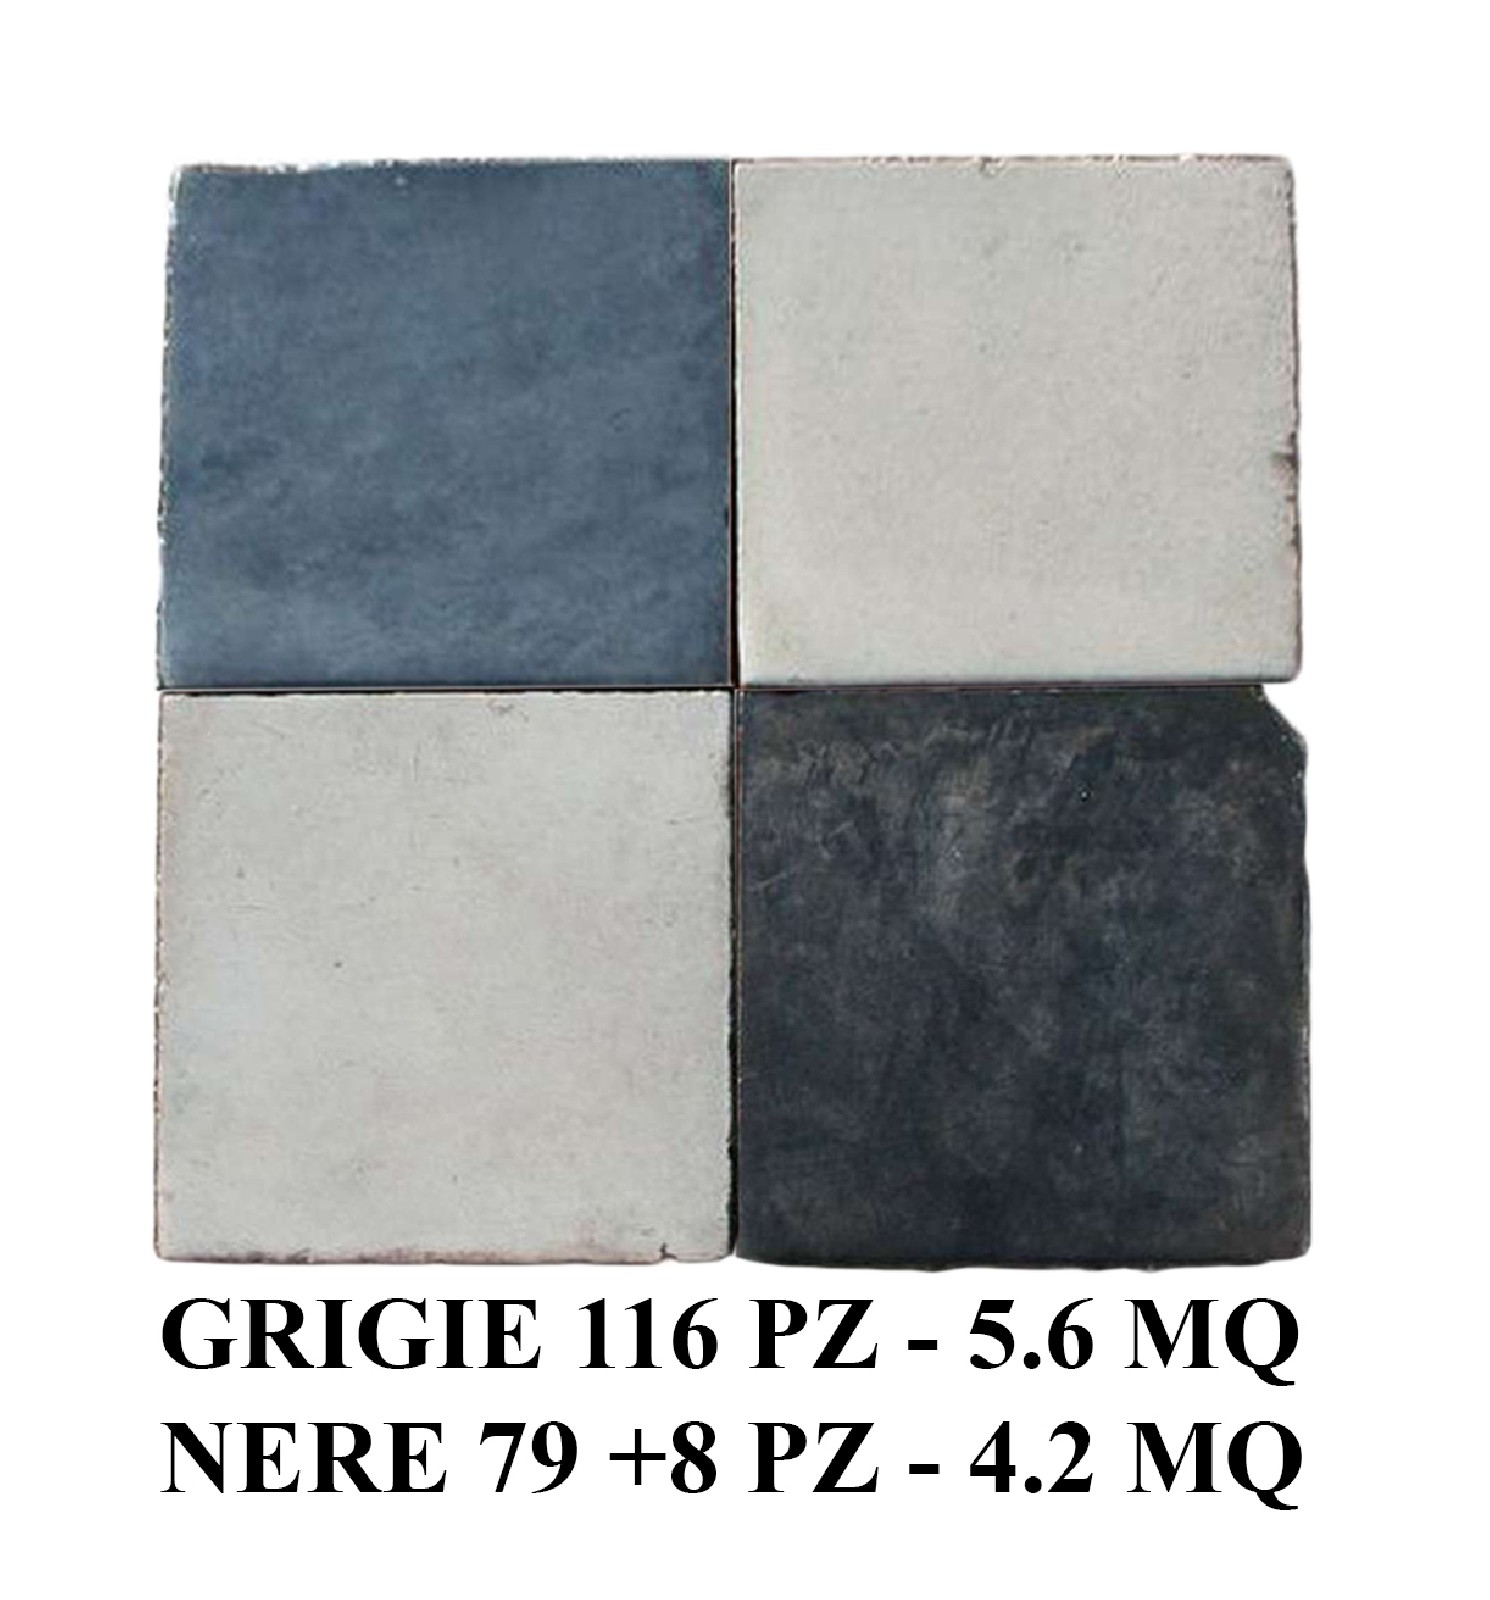 Antica pavimentazione in cementine cm 22x22 - Cementine e Graniglie - Pavimentazioni Antiche - Prodotti - Antichità Fiorillo